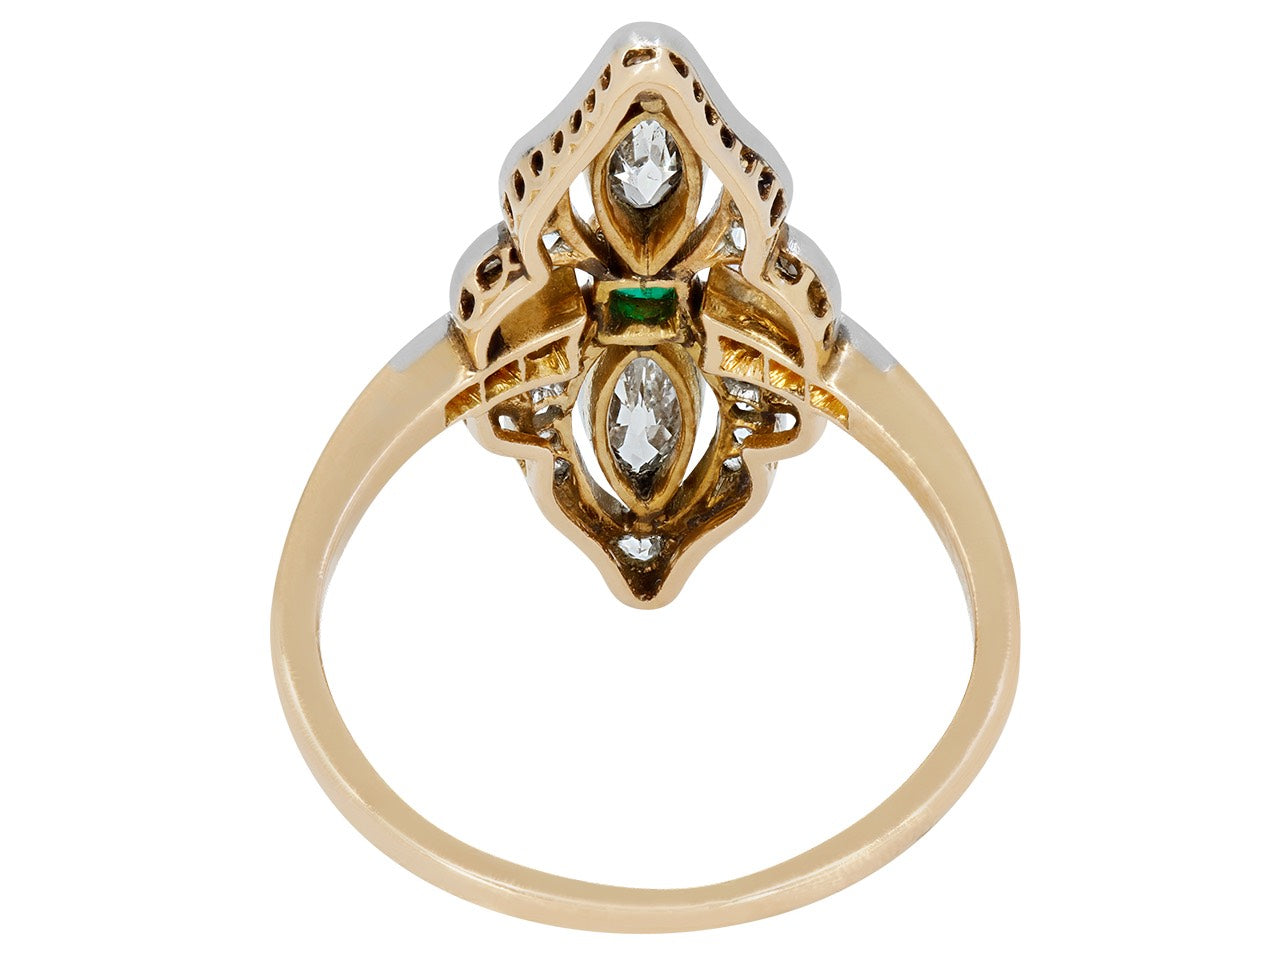 Antique Edwardian Emerald Ring in Platinum over 18K Gold